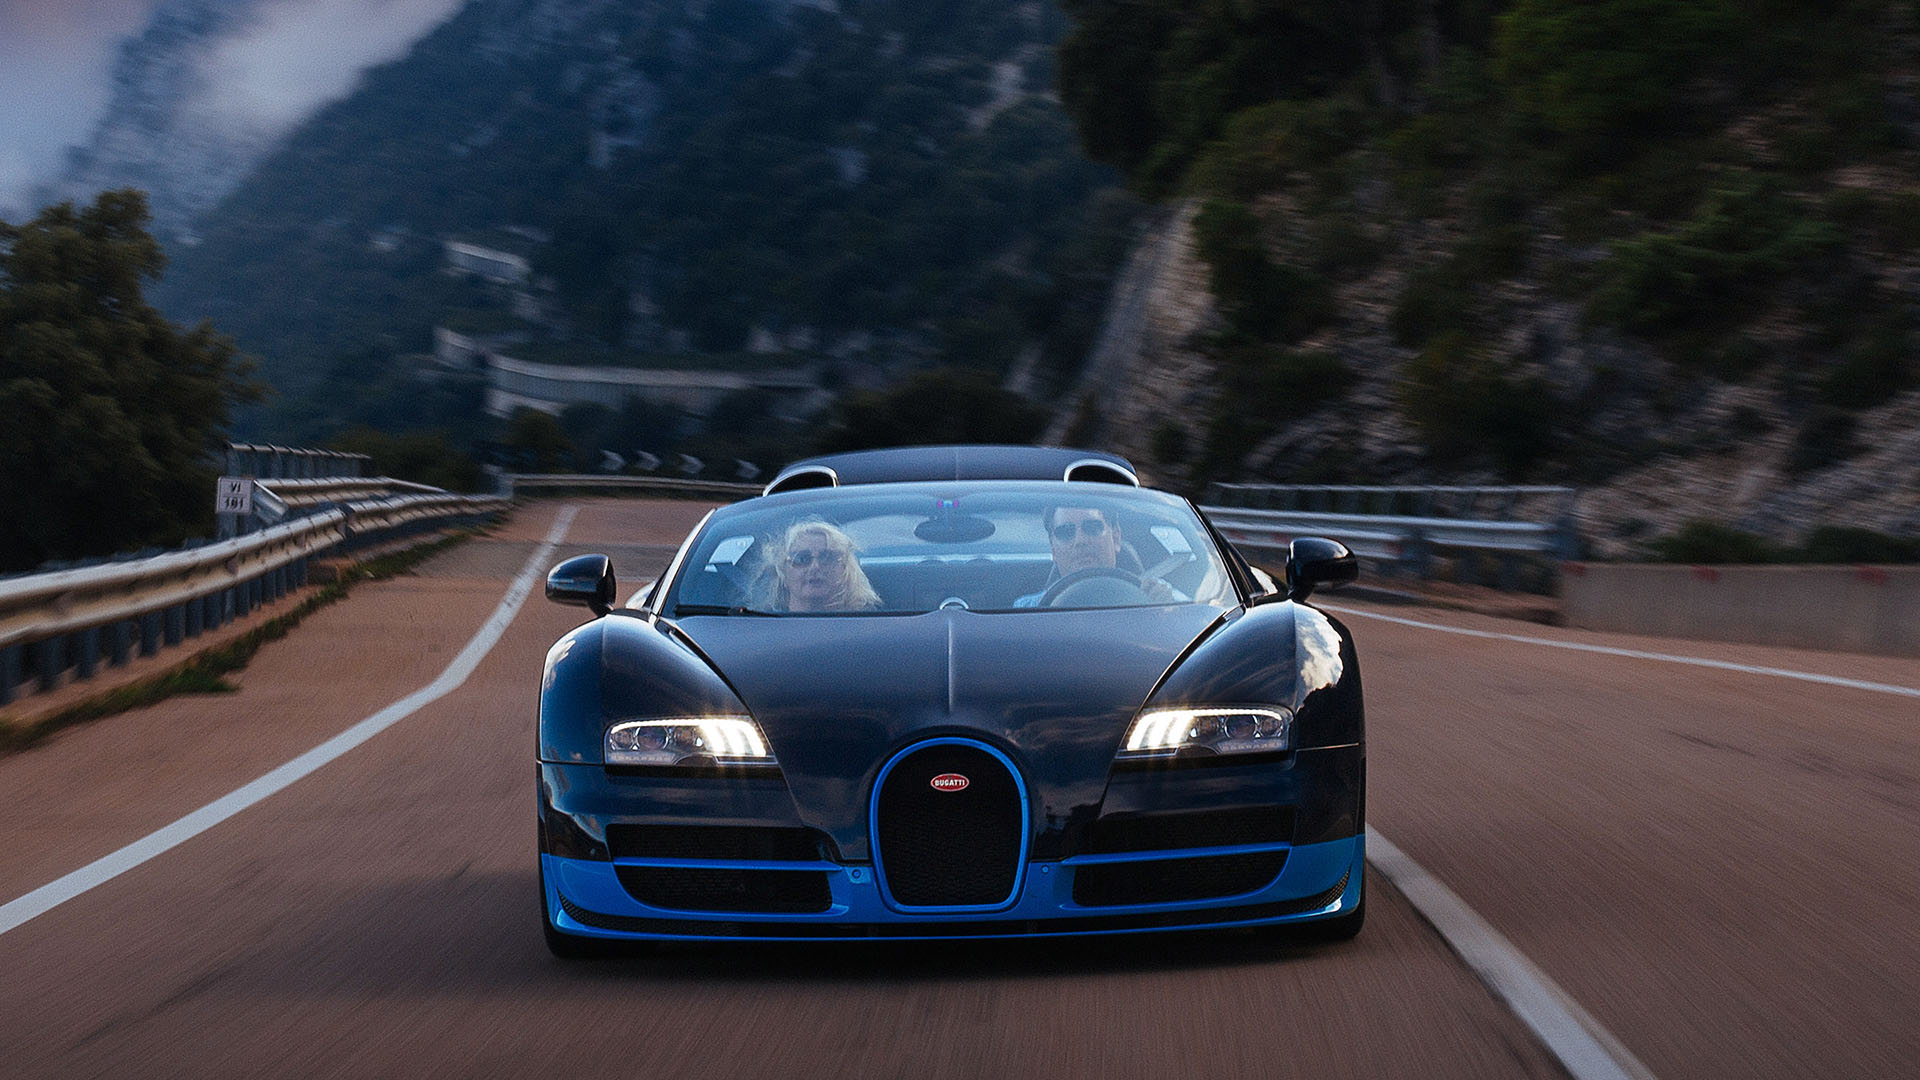 Bugatti Grand Tour explores Sardinia